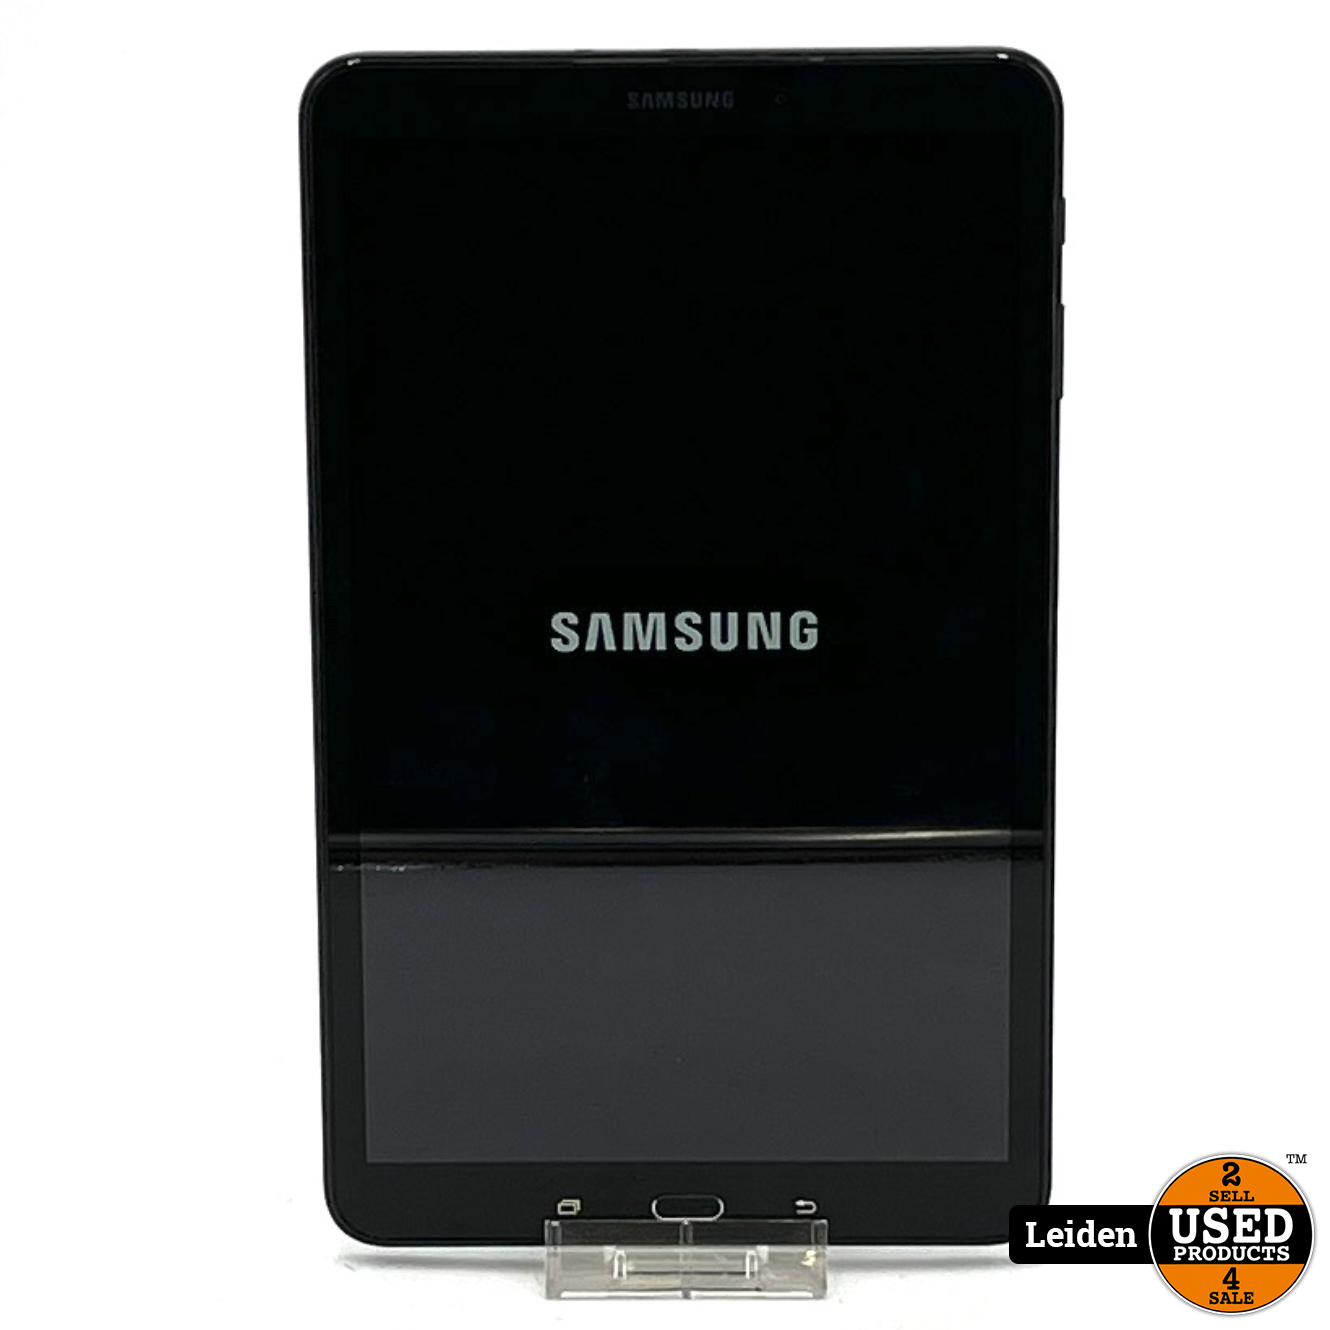 Onveilig Industrieel Sport Samsung Galaxy TAB A (SM-T580) 16 GB - Zwart - Used Products Leiden